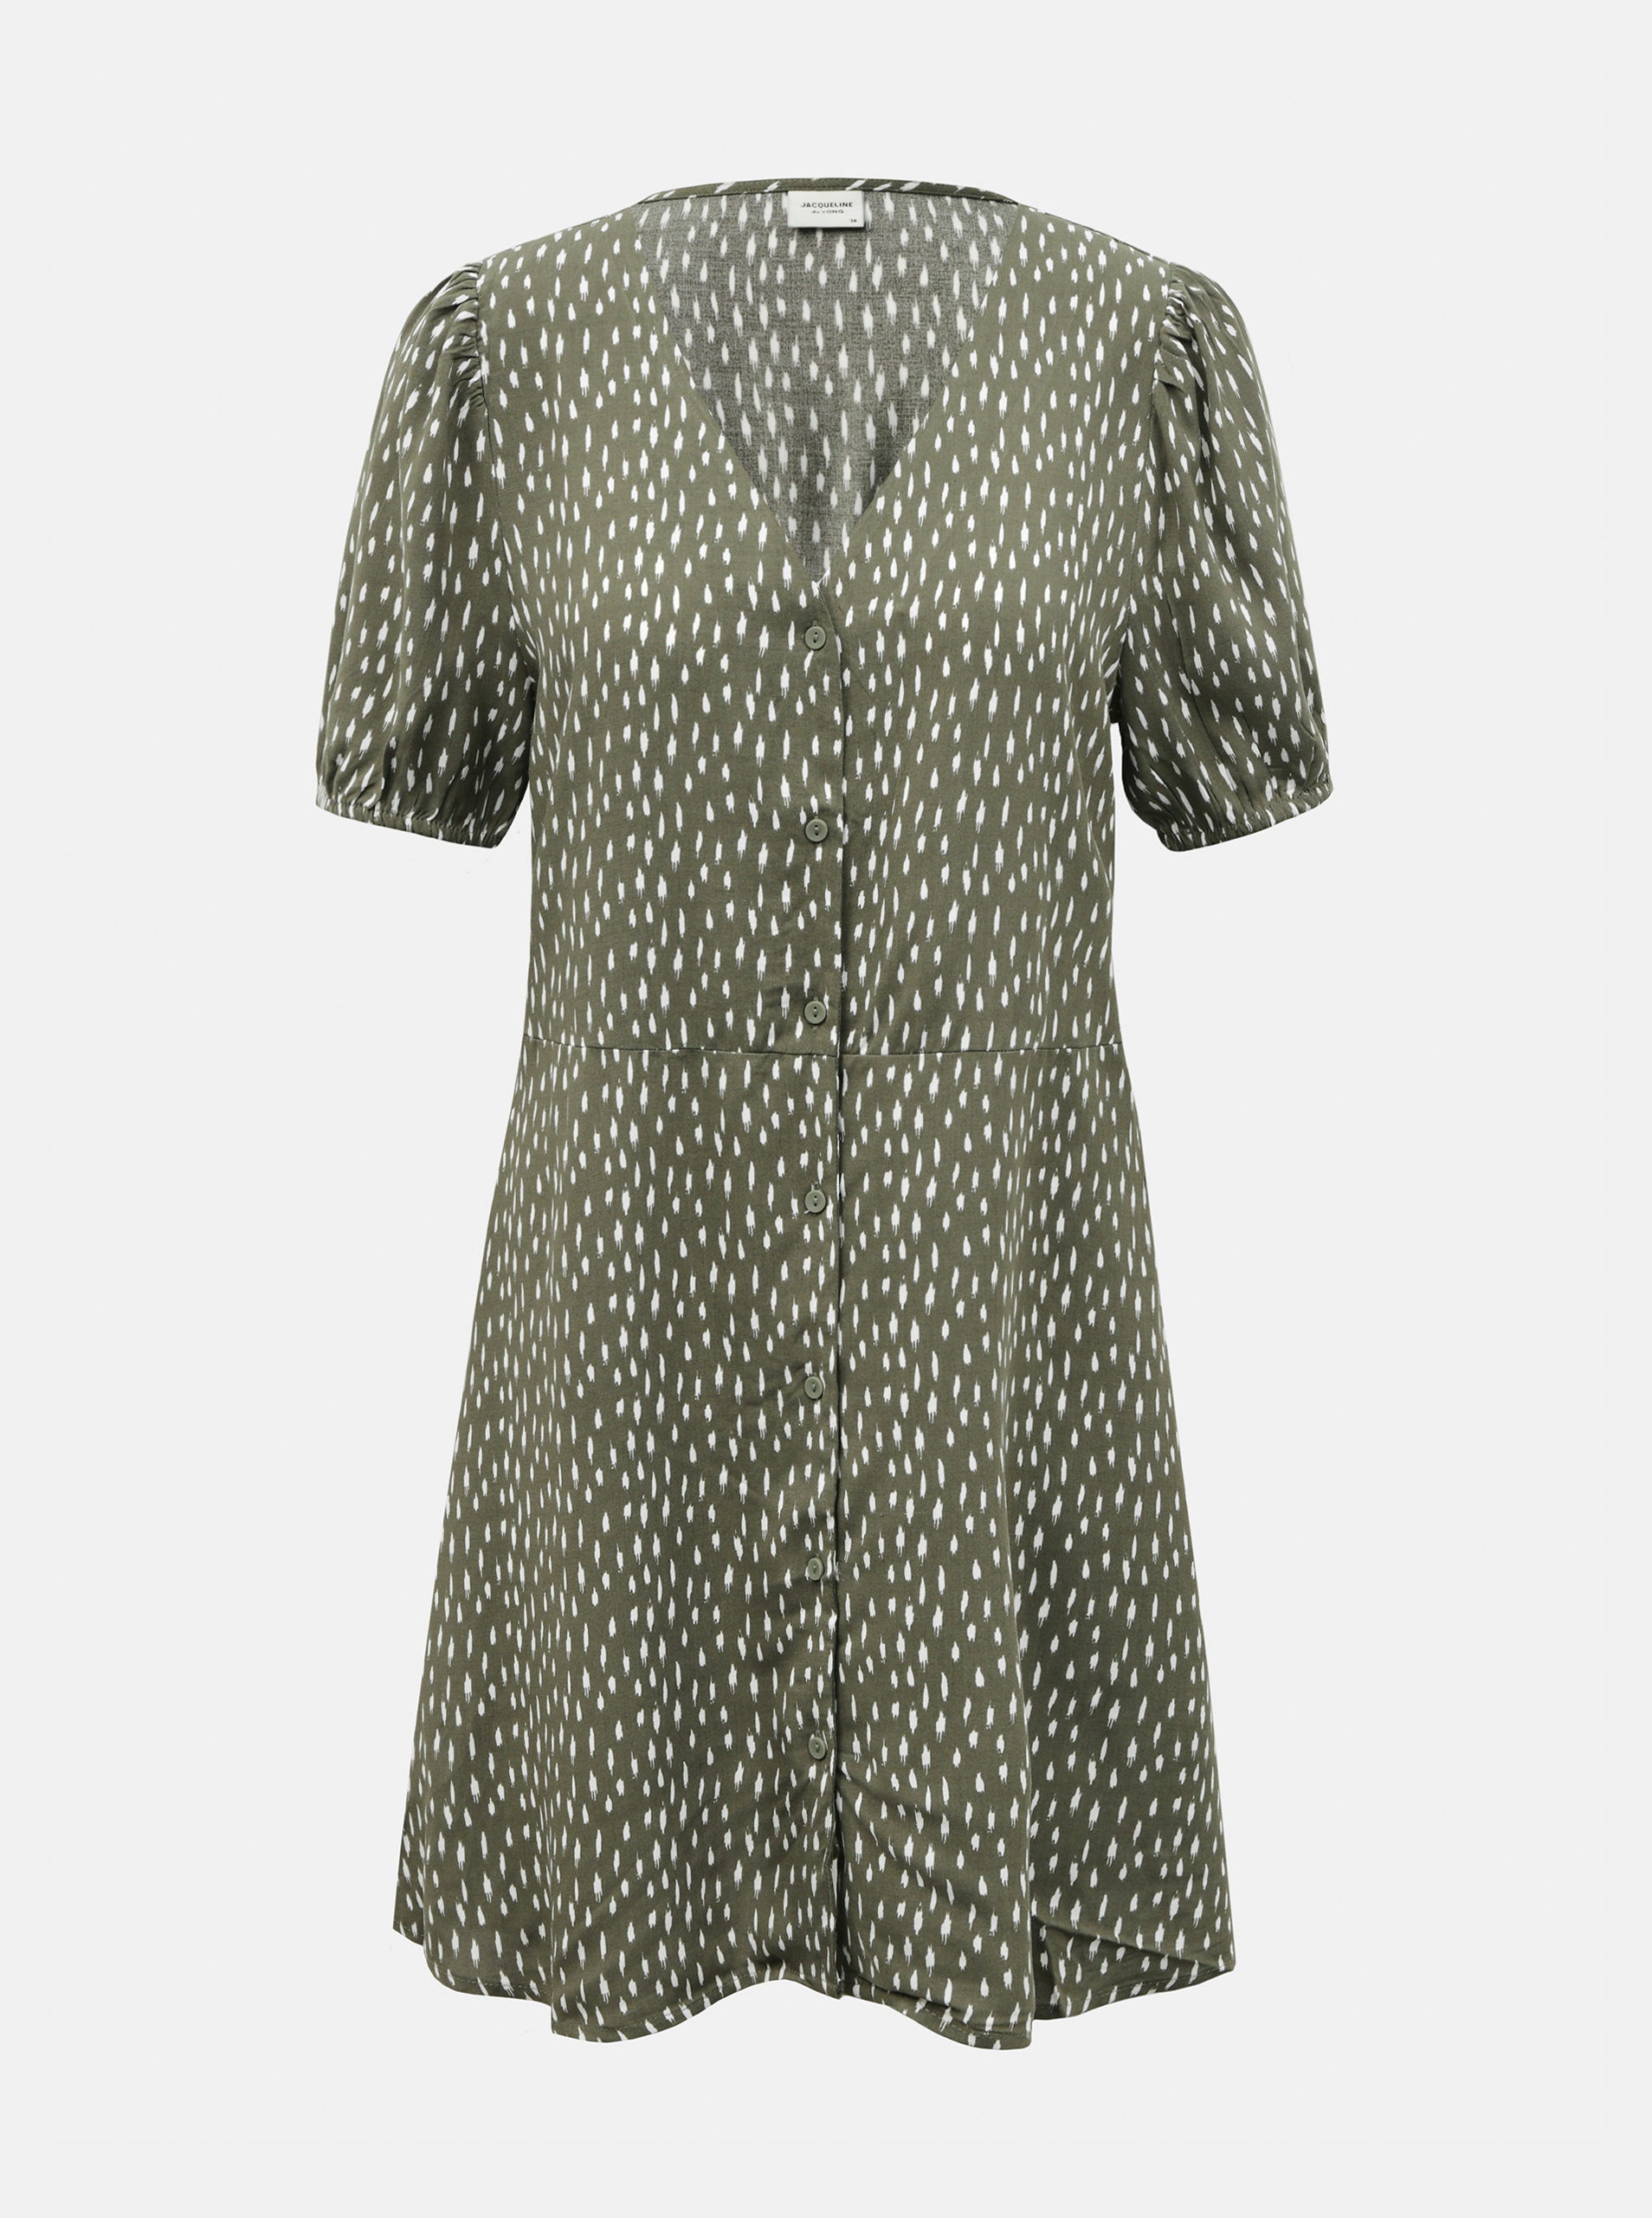 Fotografie Zelené vzorované šaty s knoflíky Jacqueline de Yong Staar